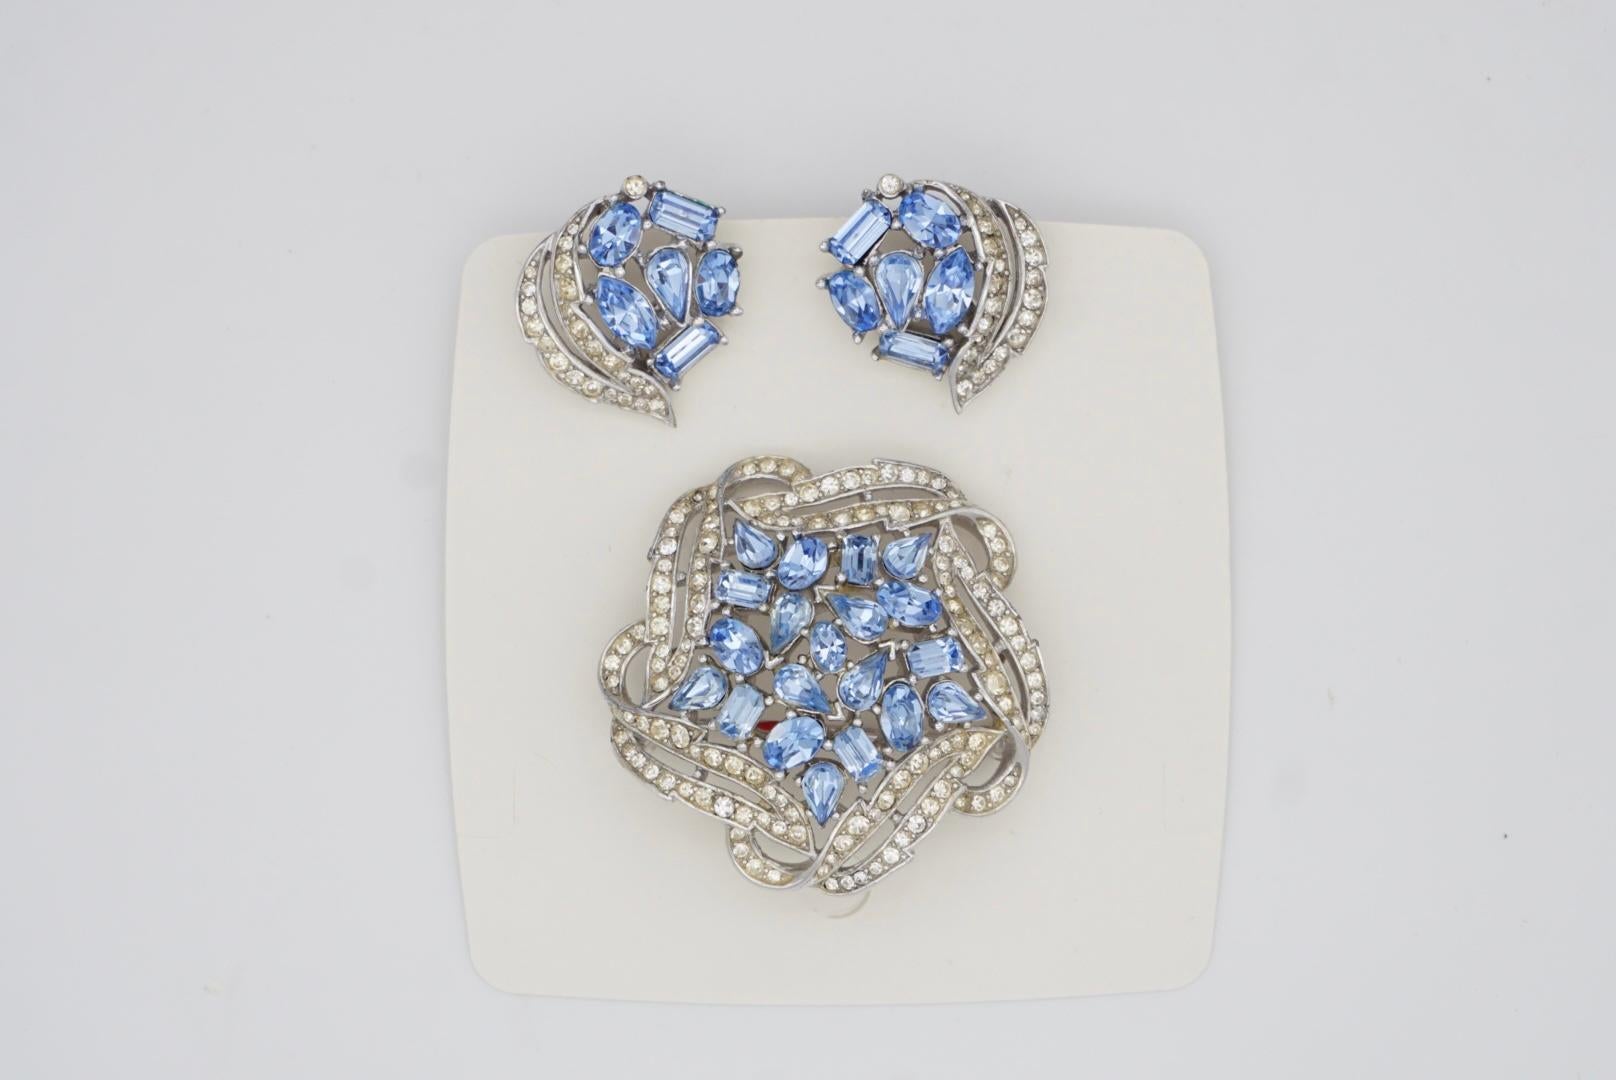 Crown Trifari Vintage 1950s Sky Blue Crystals Jewellery Set Earrings Brooch For Sale 5